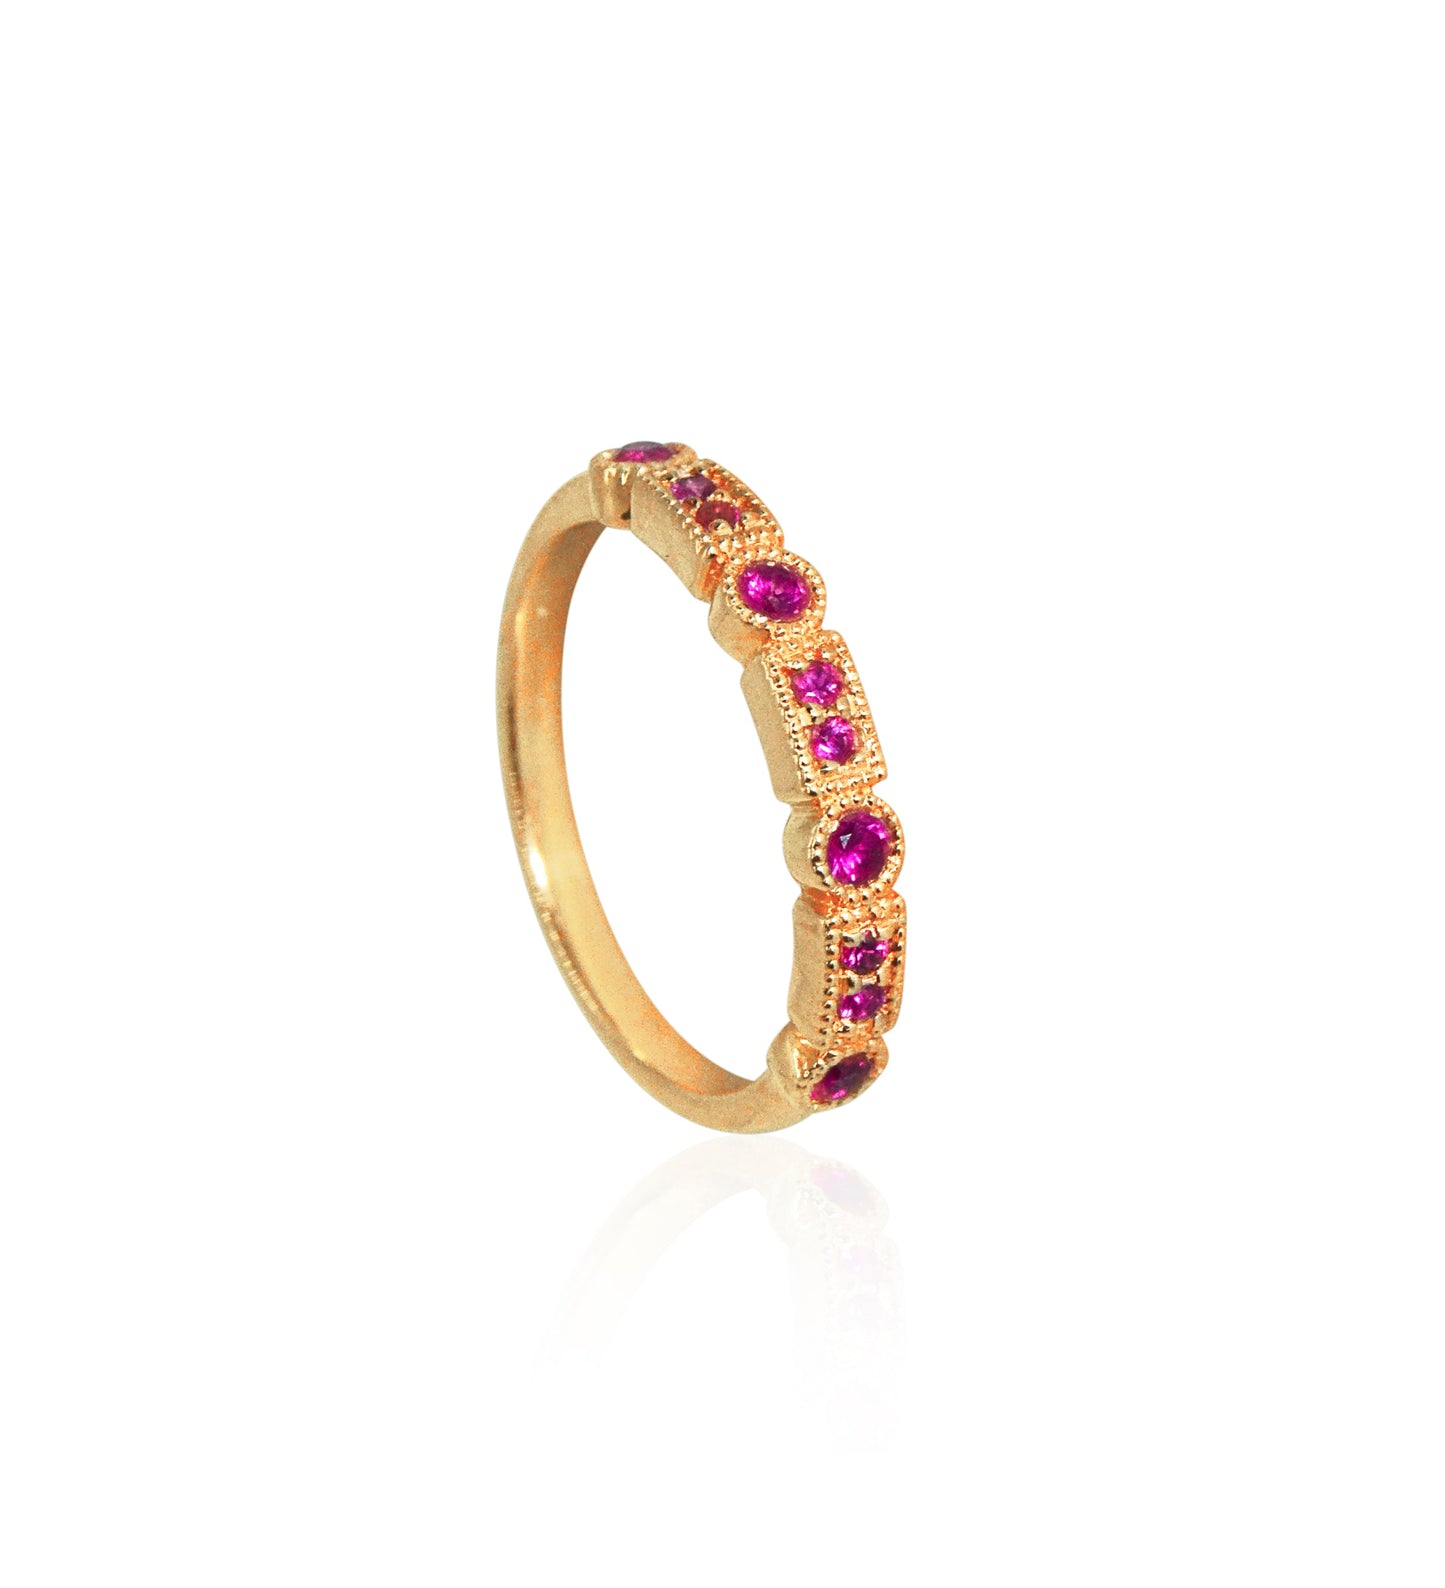 Trine Ji Hot Pink Ring - 14 Karat Gold Pink Sapphires